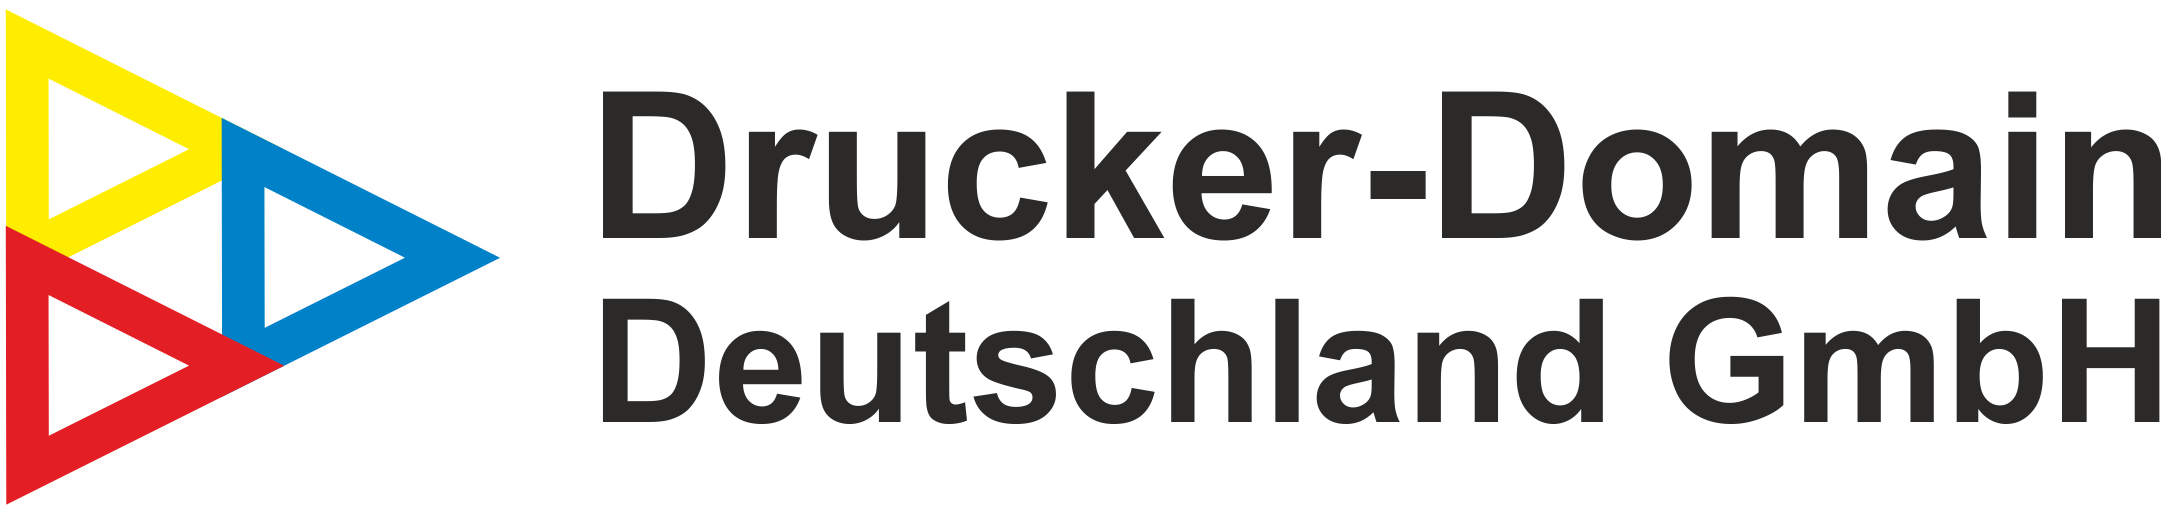 Drucker-Domain Deutschland